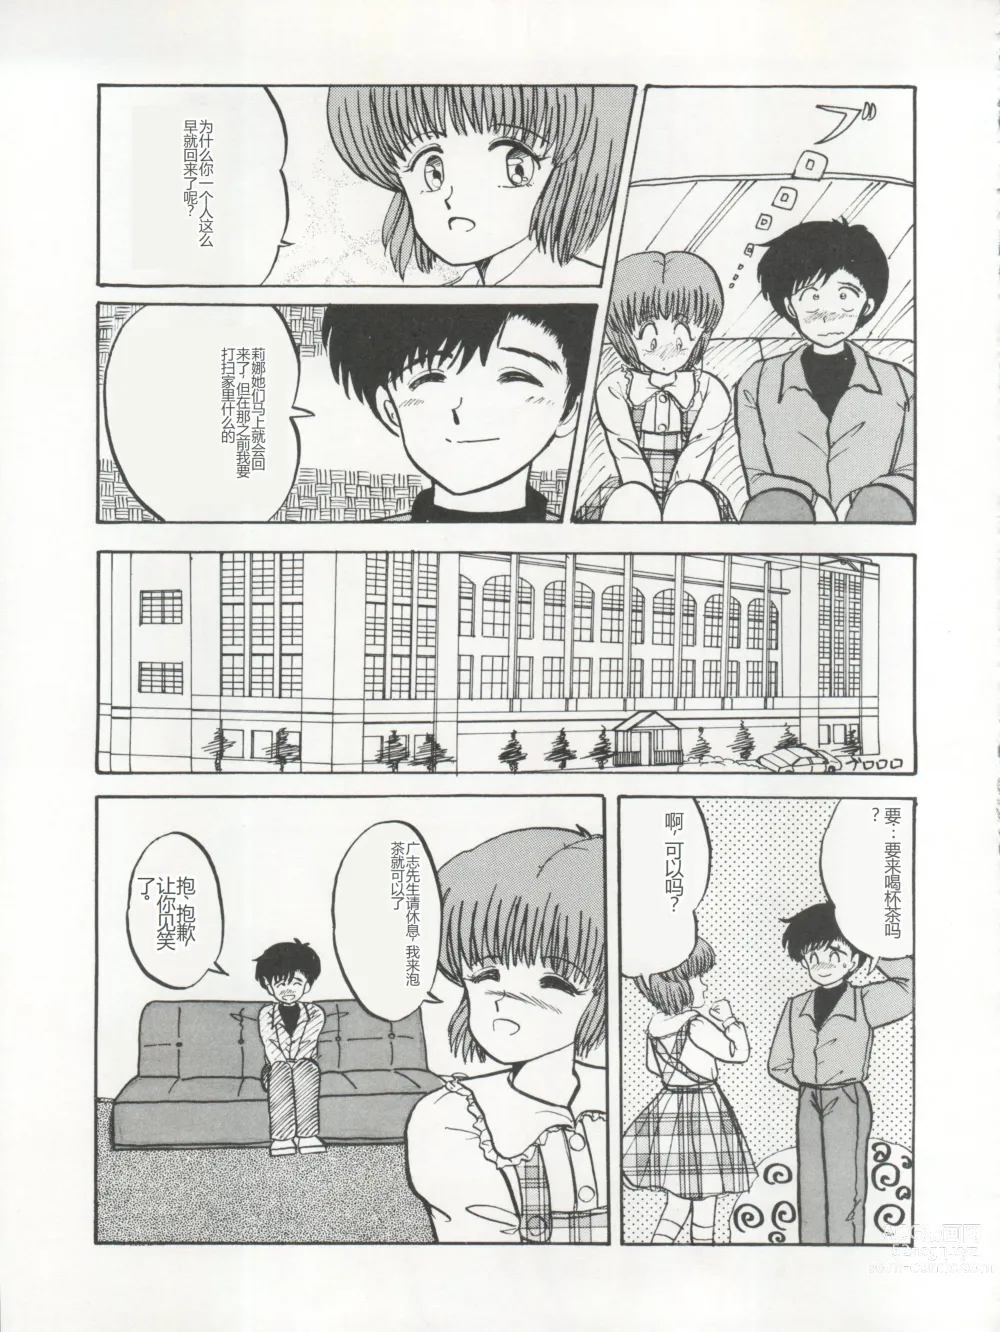 Page 31 of doujinshi 逮捕されちゃうぞ